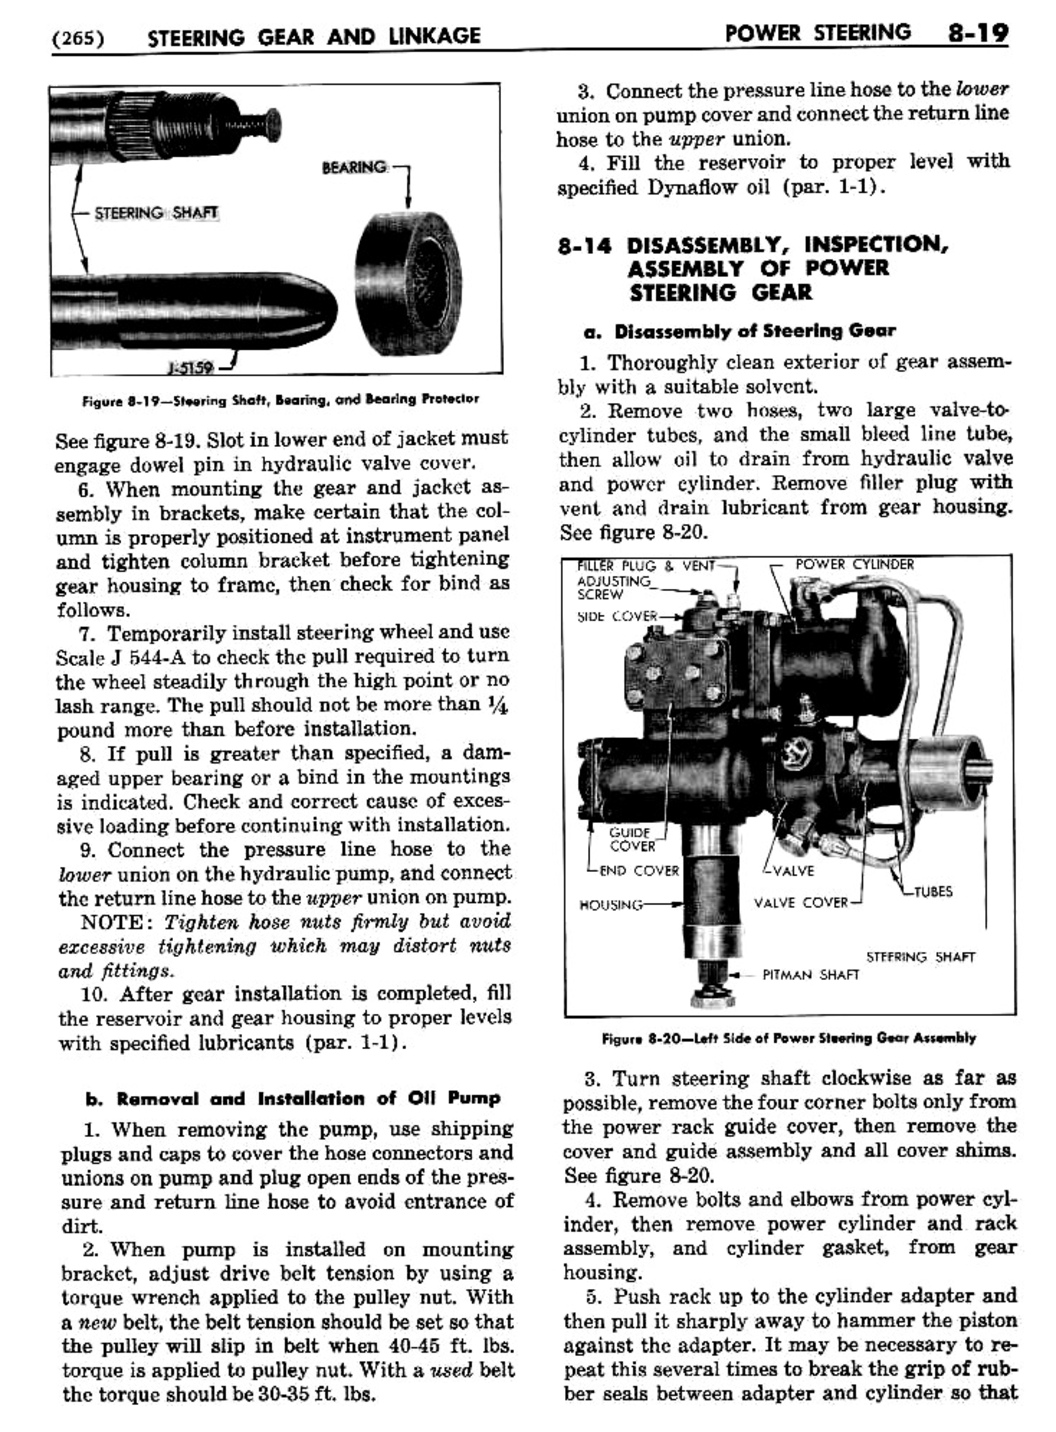 n_09 1955 Buick Shop Manual - Steering-019-019.jpg